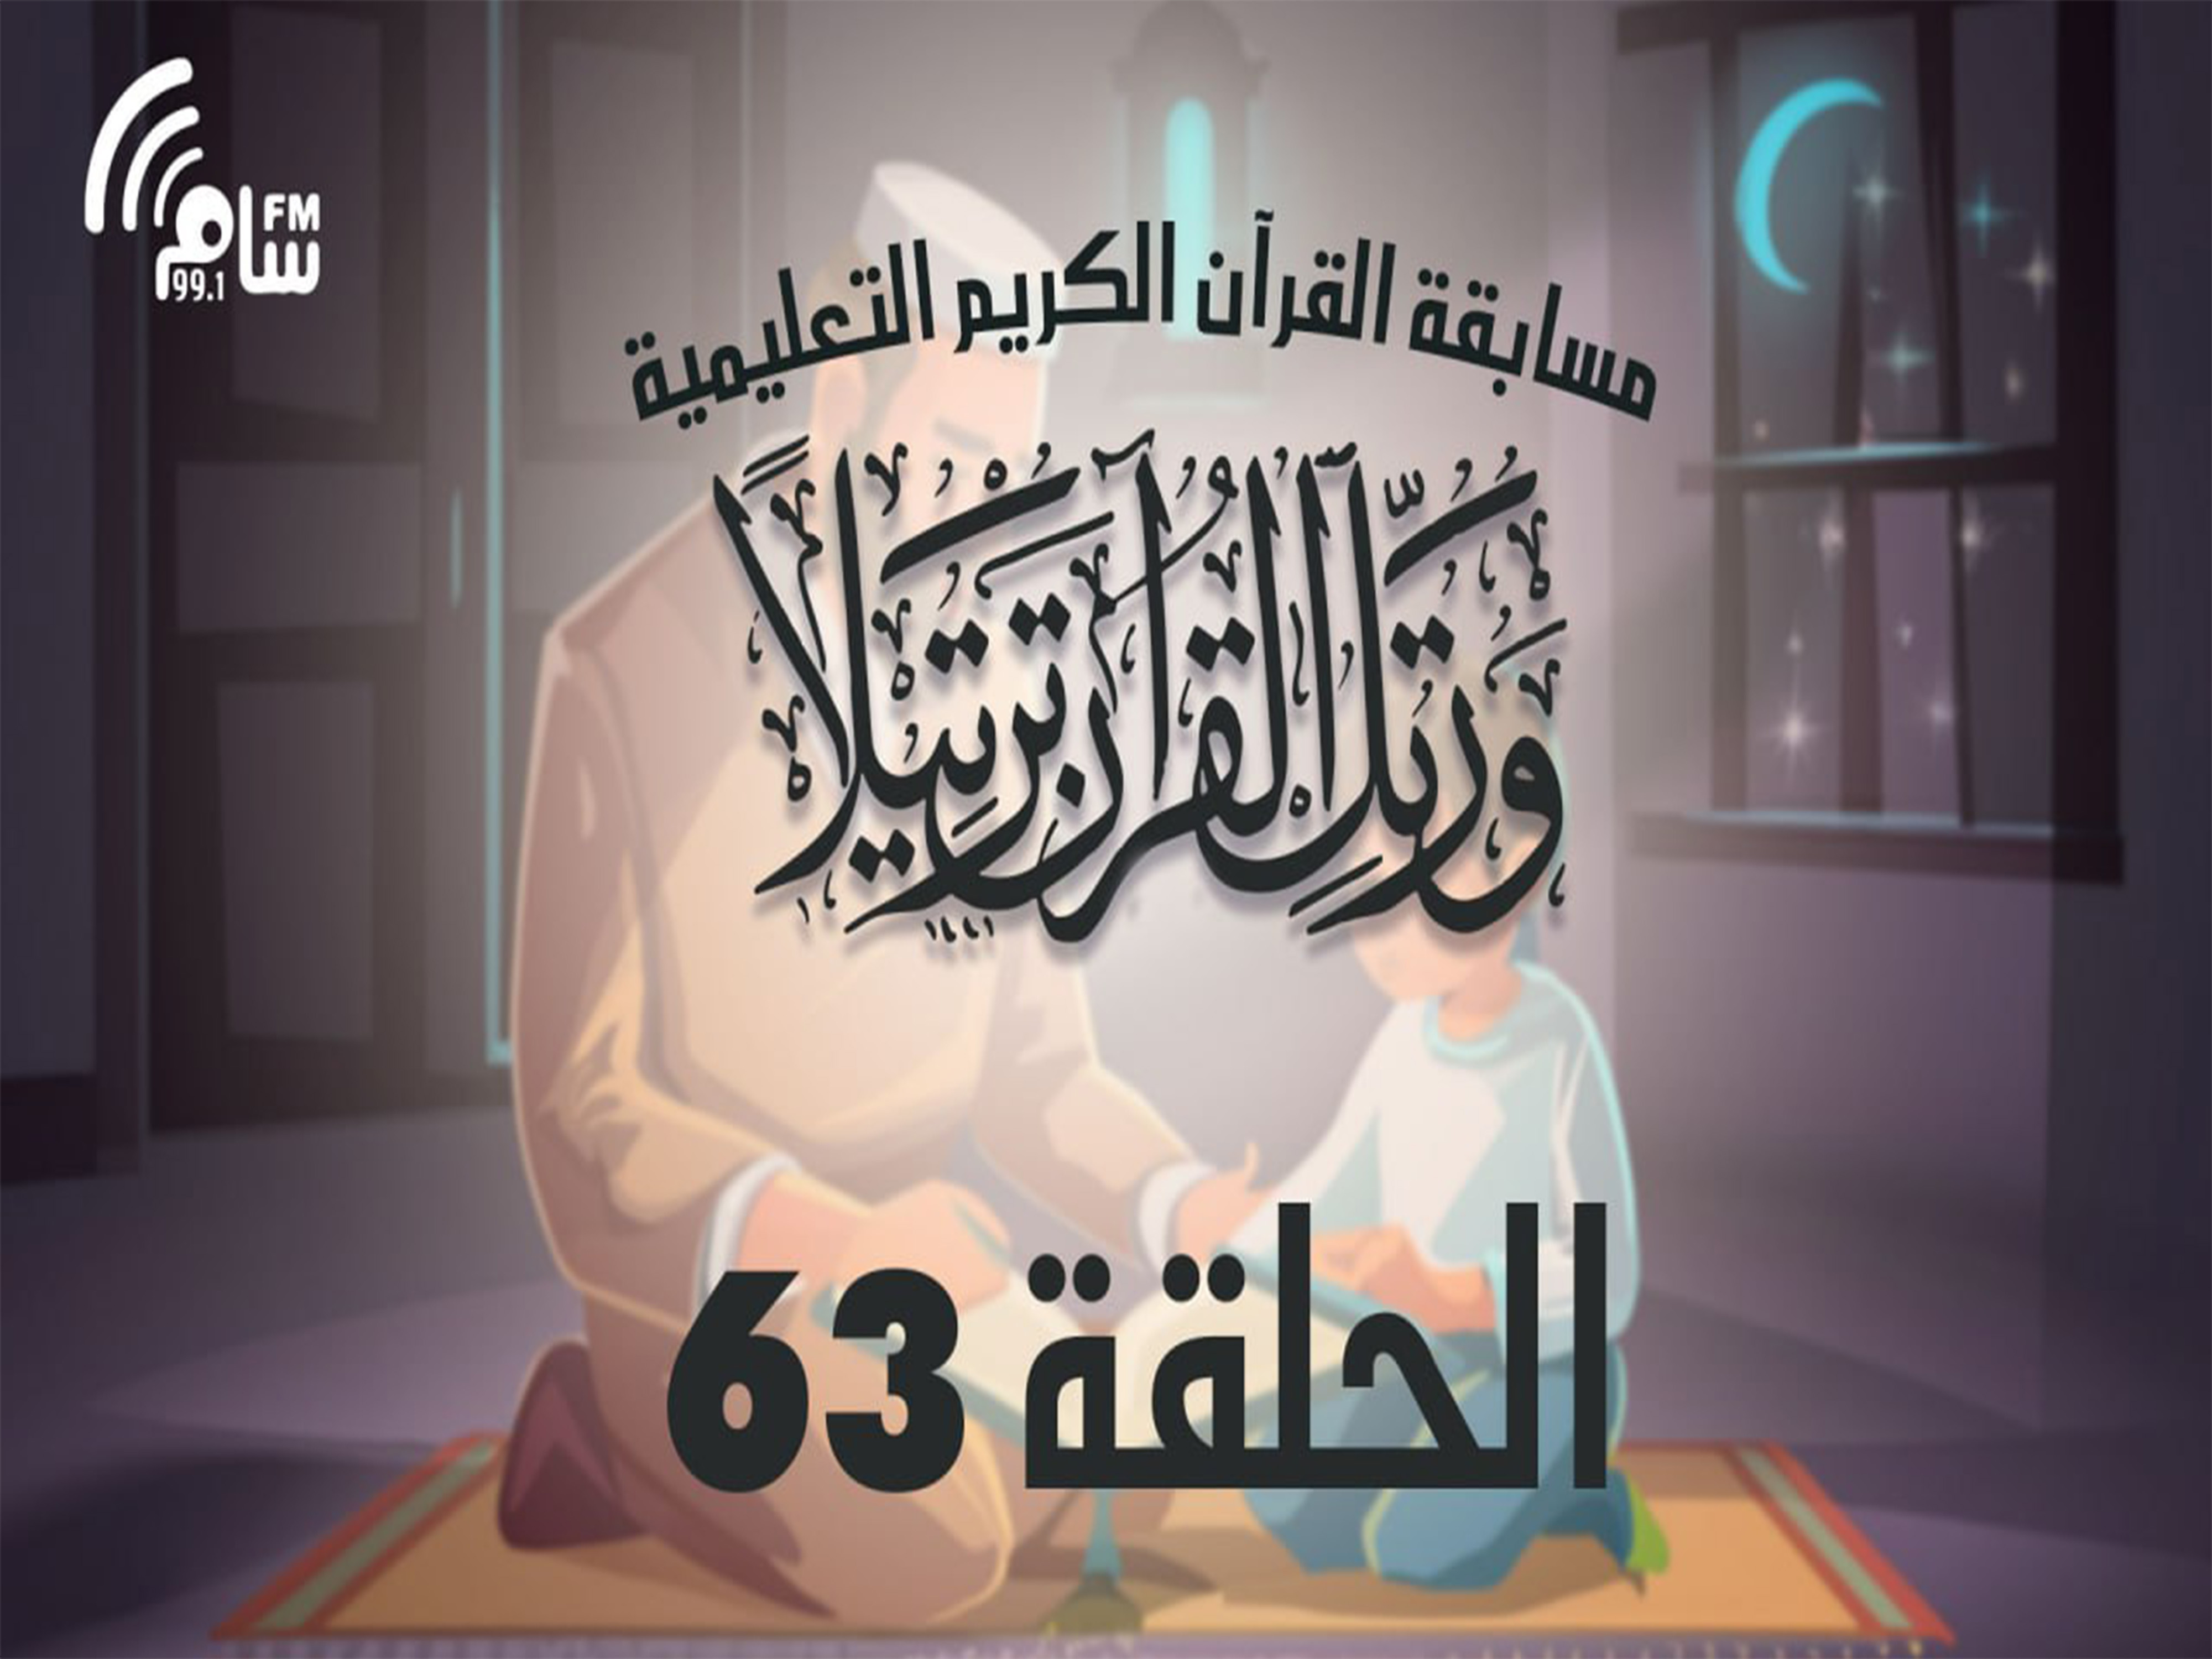 مسابقة القرآن الكريم الحلقة 63 انتاج اذاعة اسام اف ام